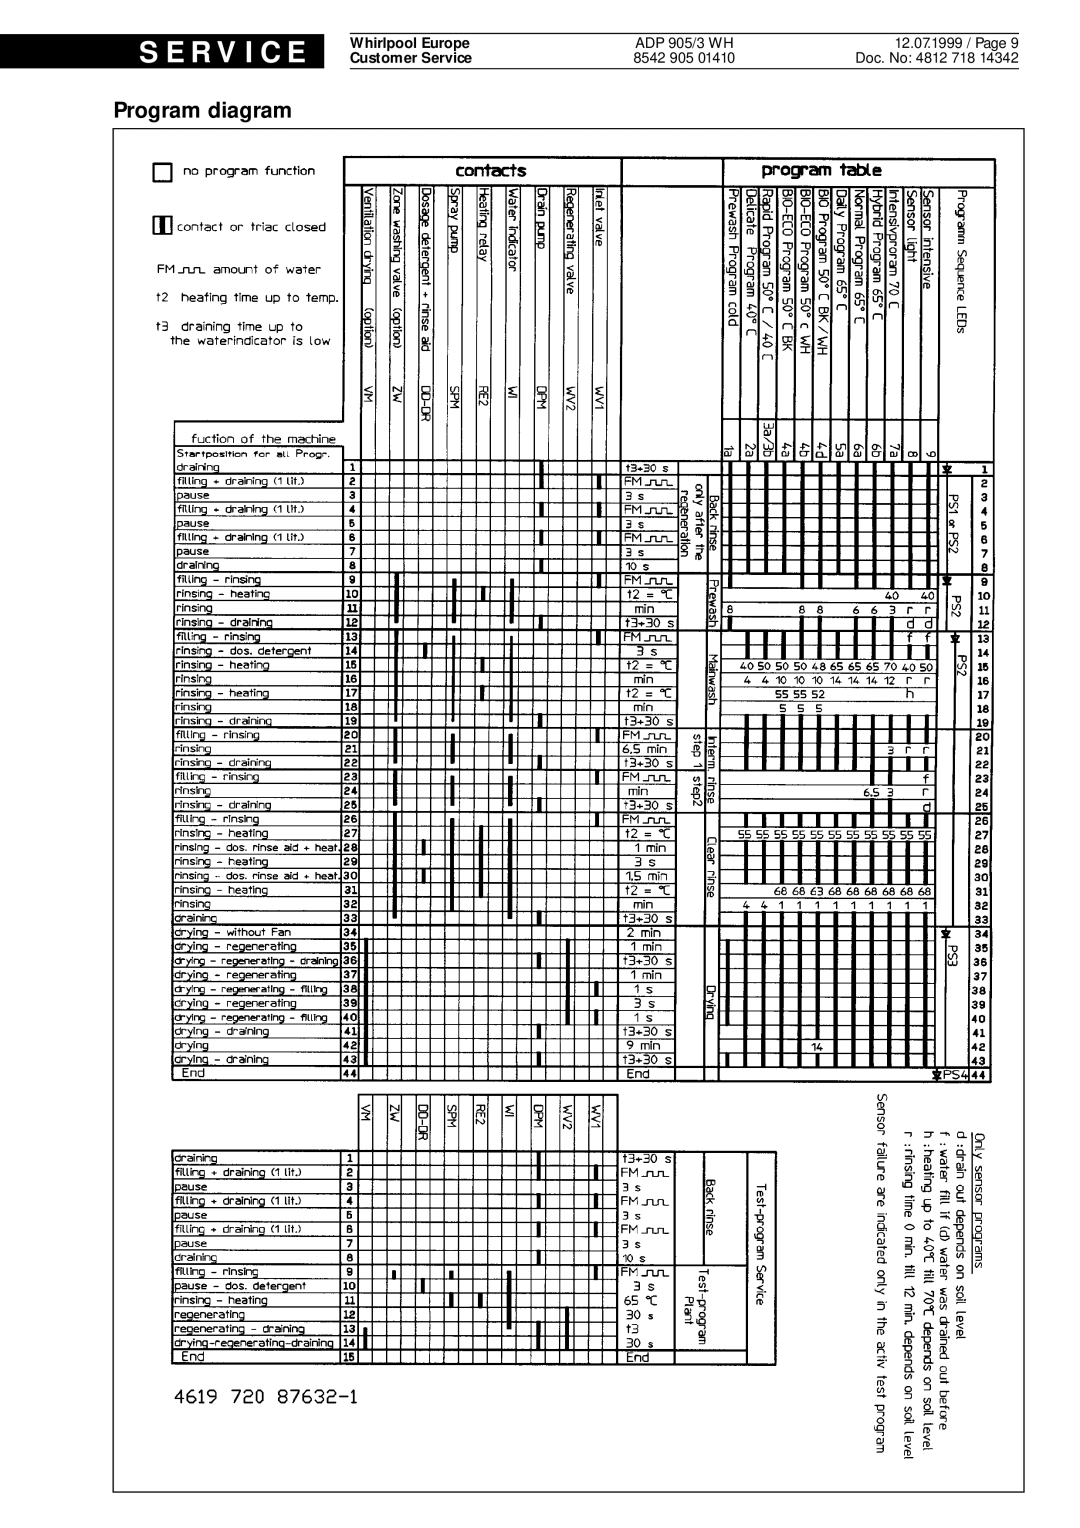 Whirlpool ADP 905/3 WH service manual Program diagram, S E R V I C E, Doc. No 